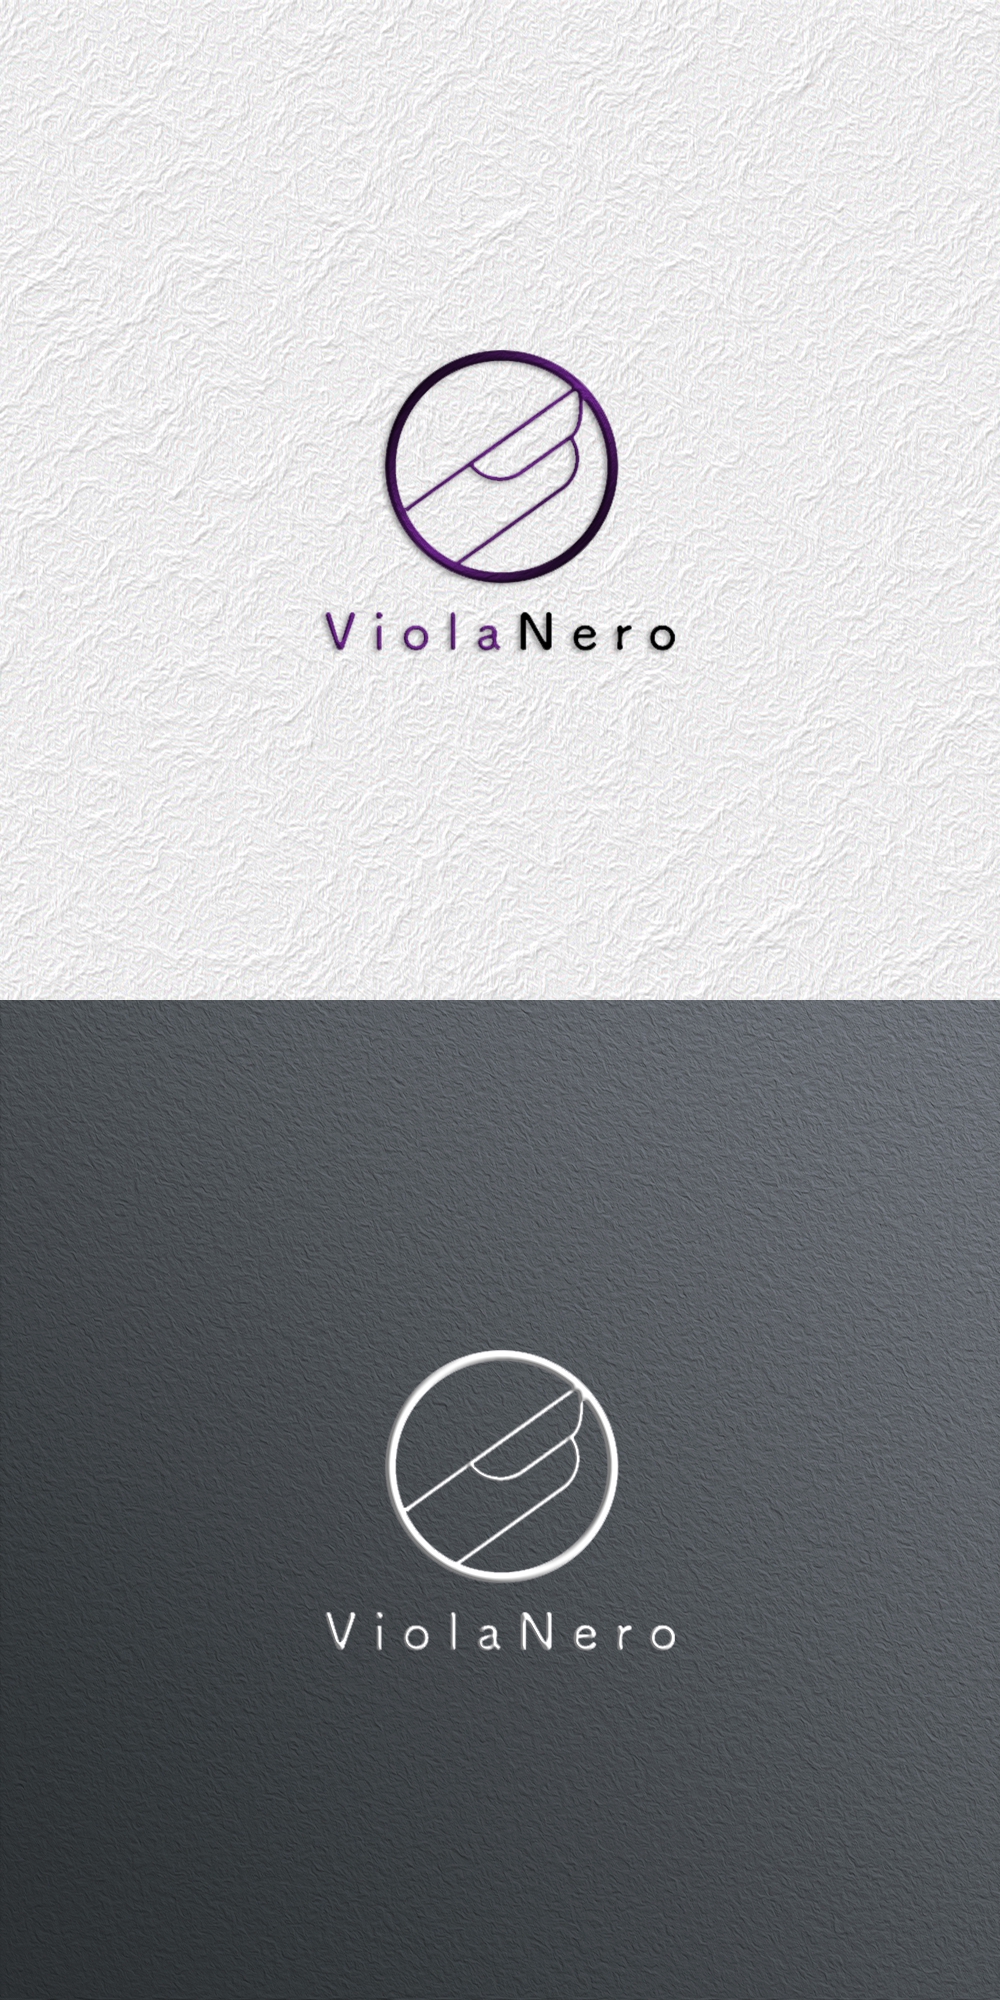 ネイルサロン(ViolaNero)のロゴです。